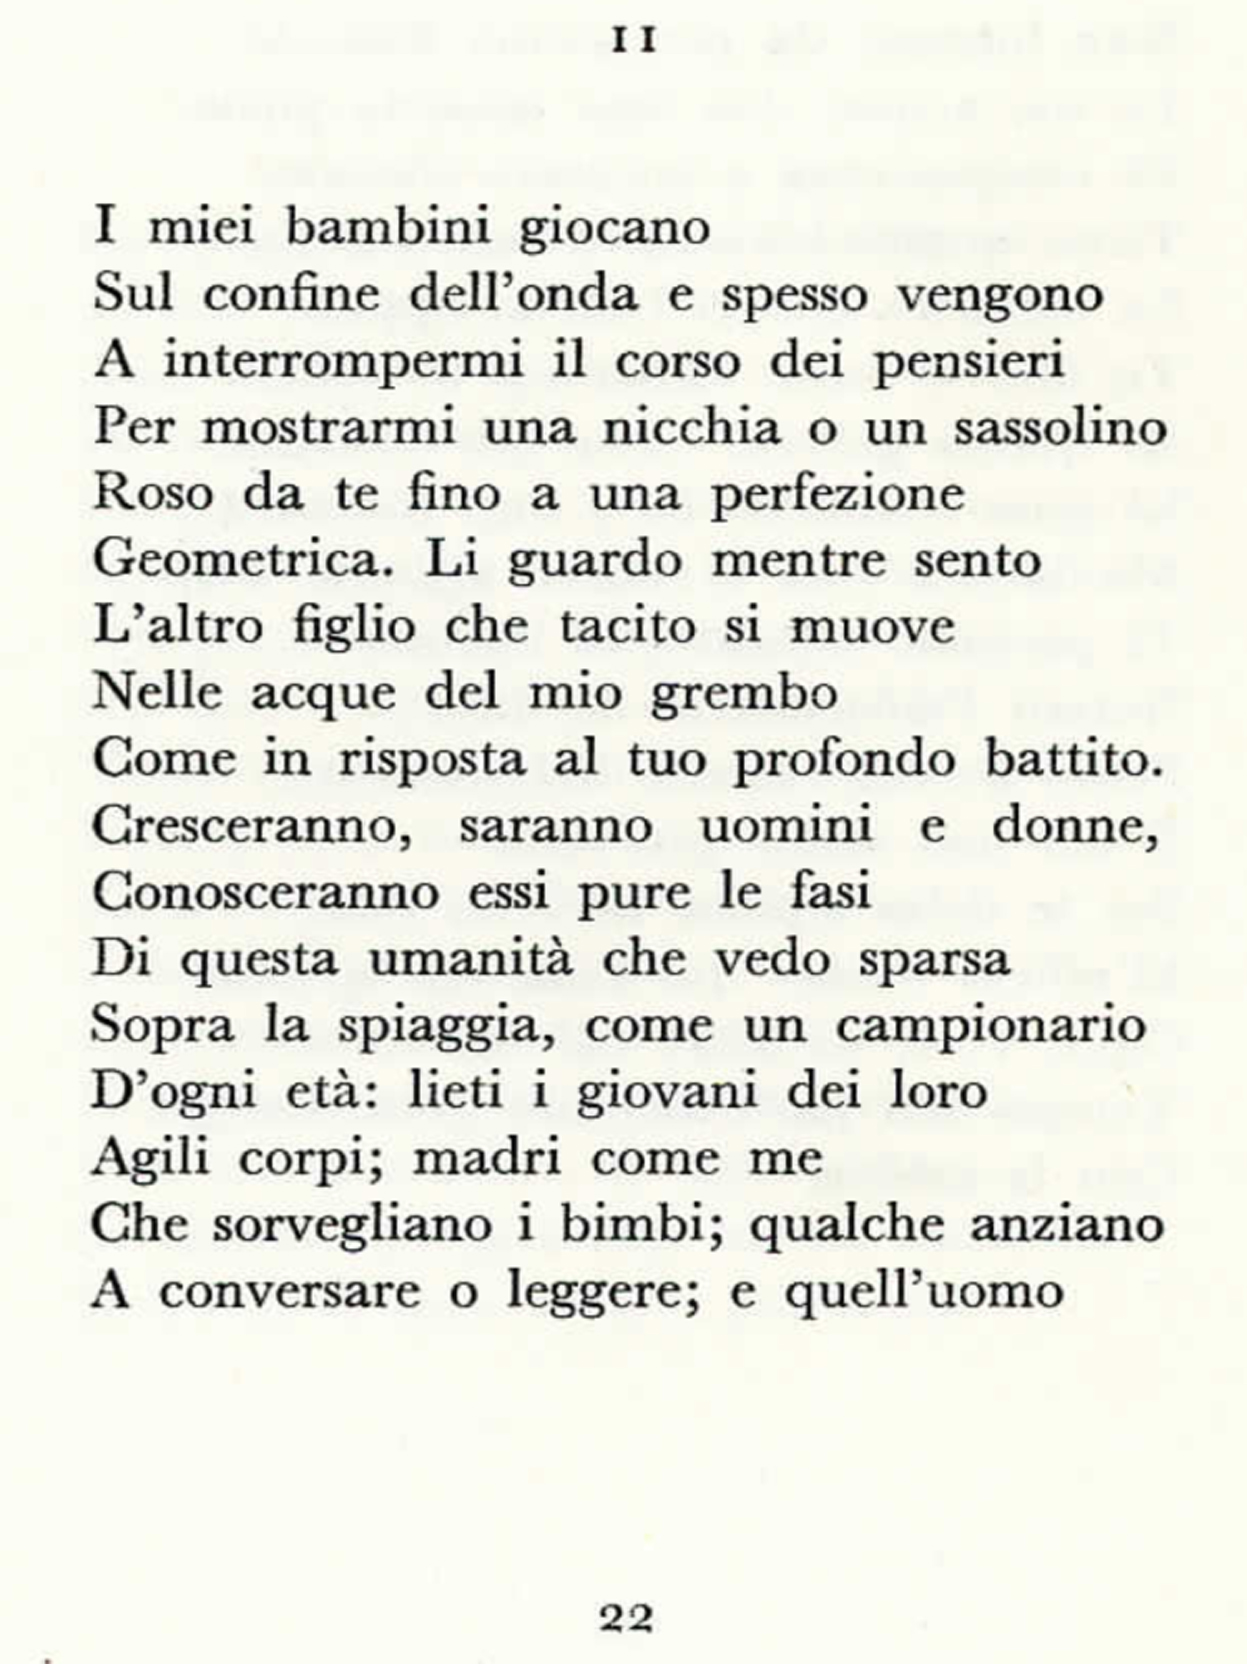 Poesia Giorno Dei Santi Pensieri In Riva Al Mare 11 Uno